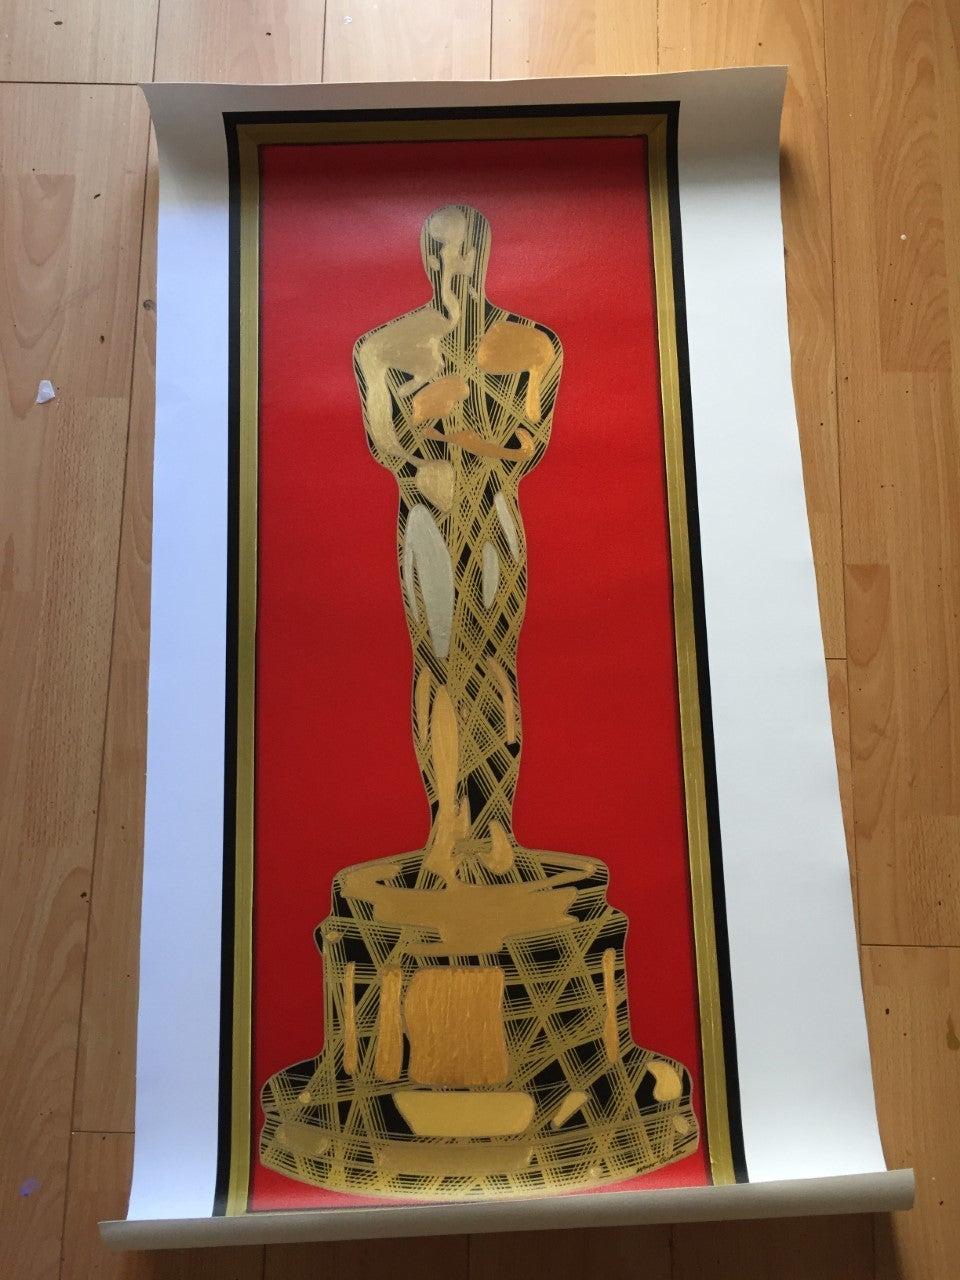 Mit dieser limitierten Oscar-Kunstserie von Mauro Oliveira wird die Academy gefeiert. 

Limitierte Auflage von 30 Gicléedrucken in Museumsqualität auf CANVAS, vom Künstler signiert und nummeriert. 
Ein vom Künstler ausgestelltes